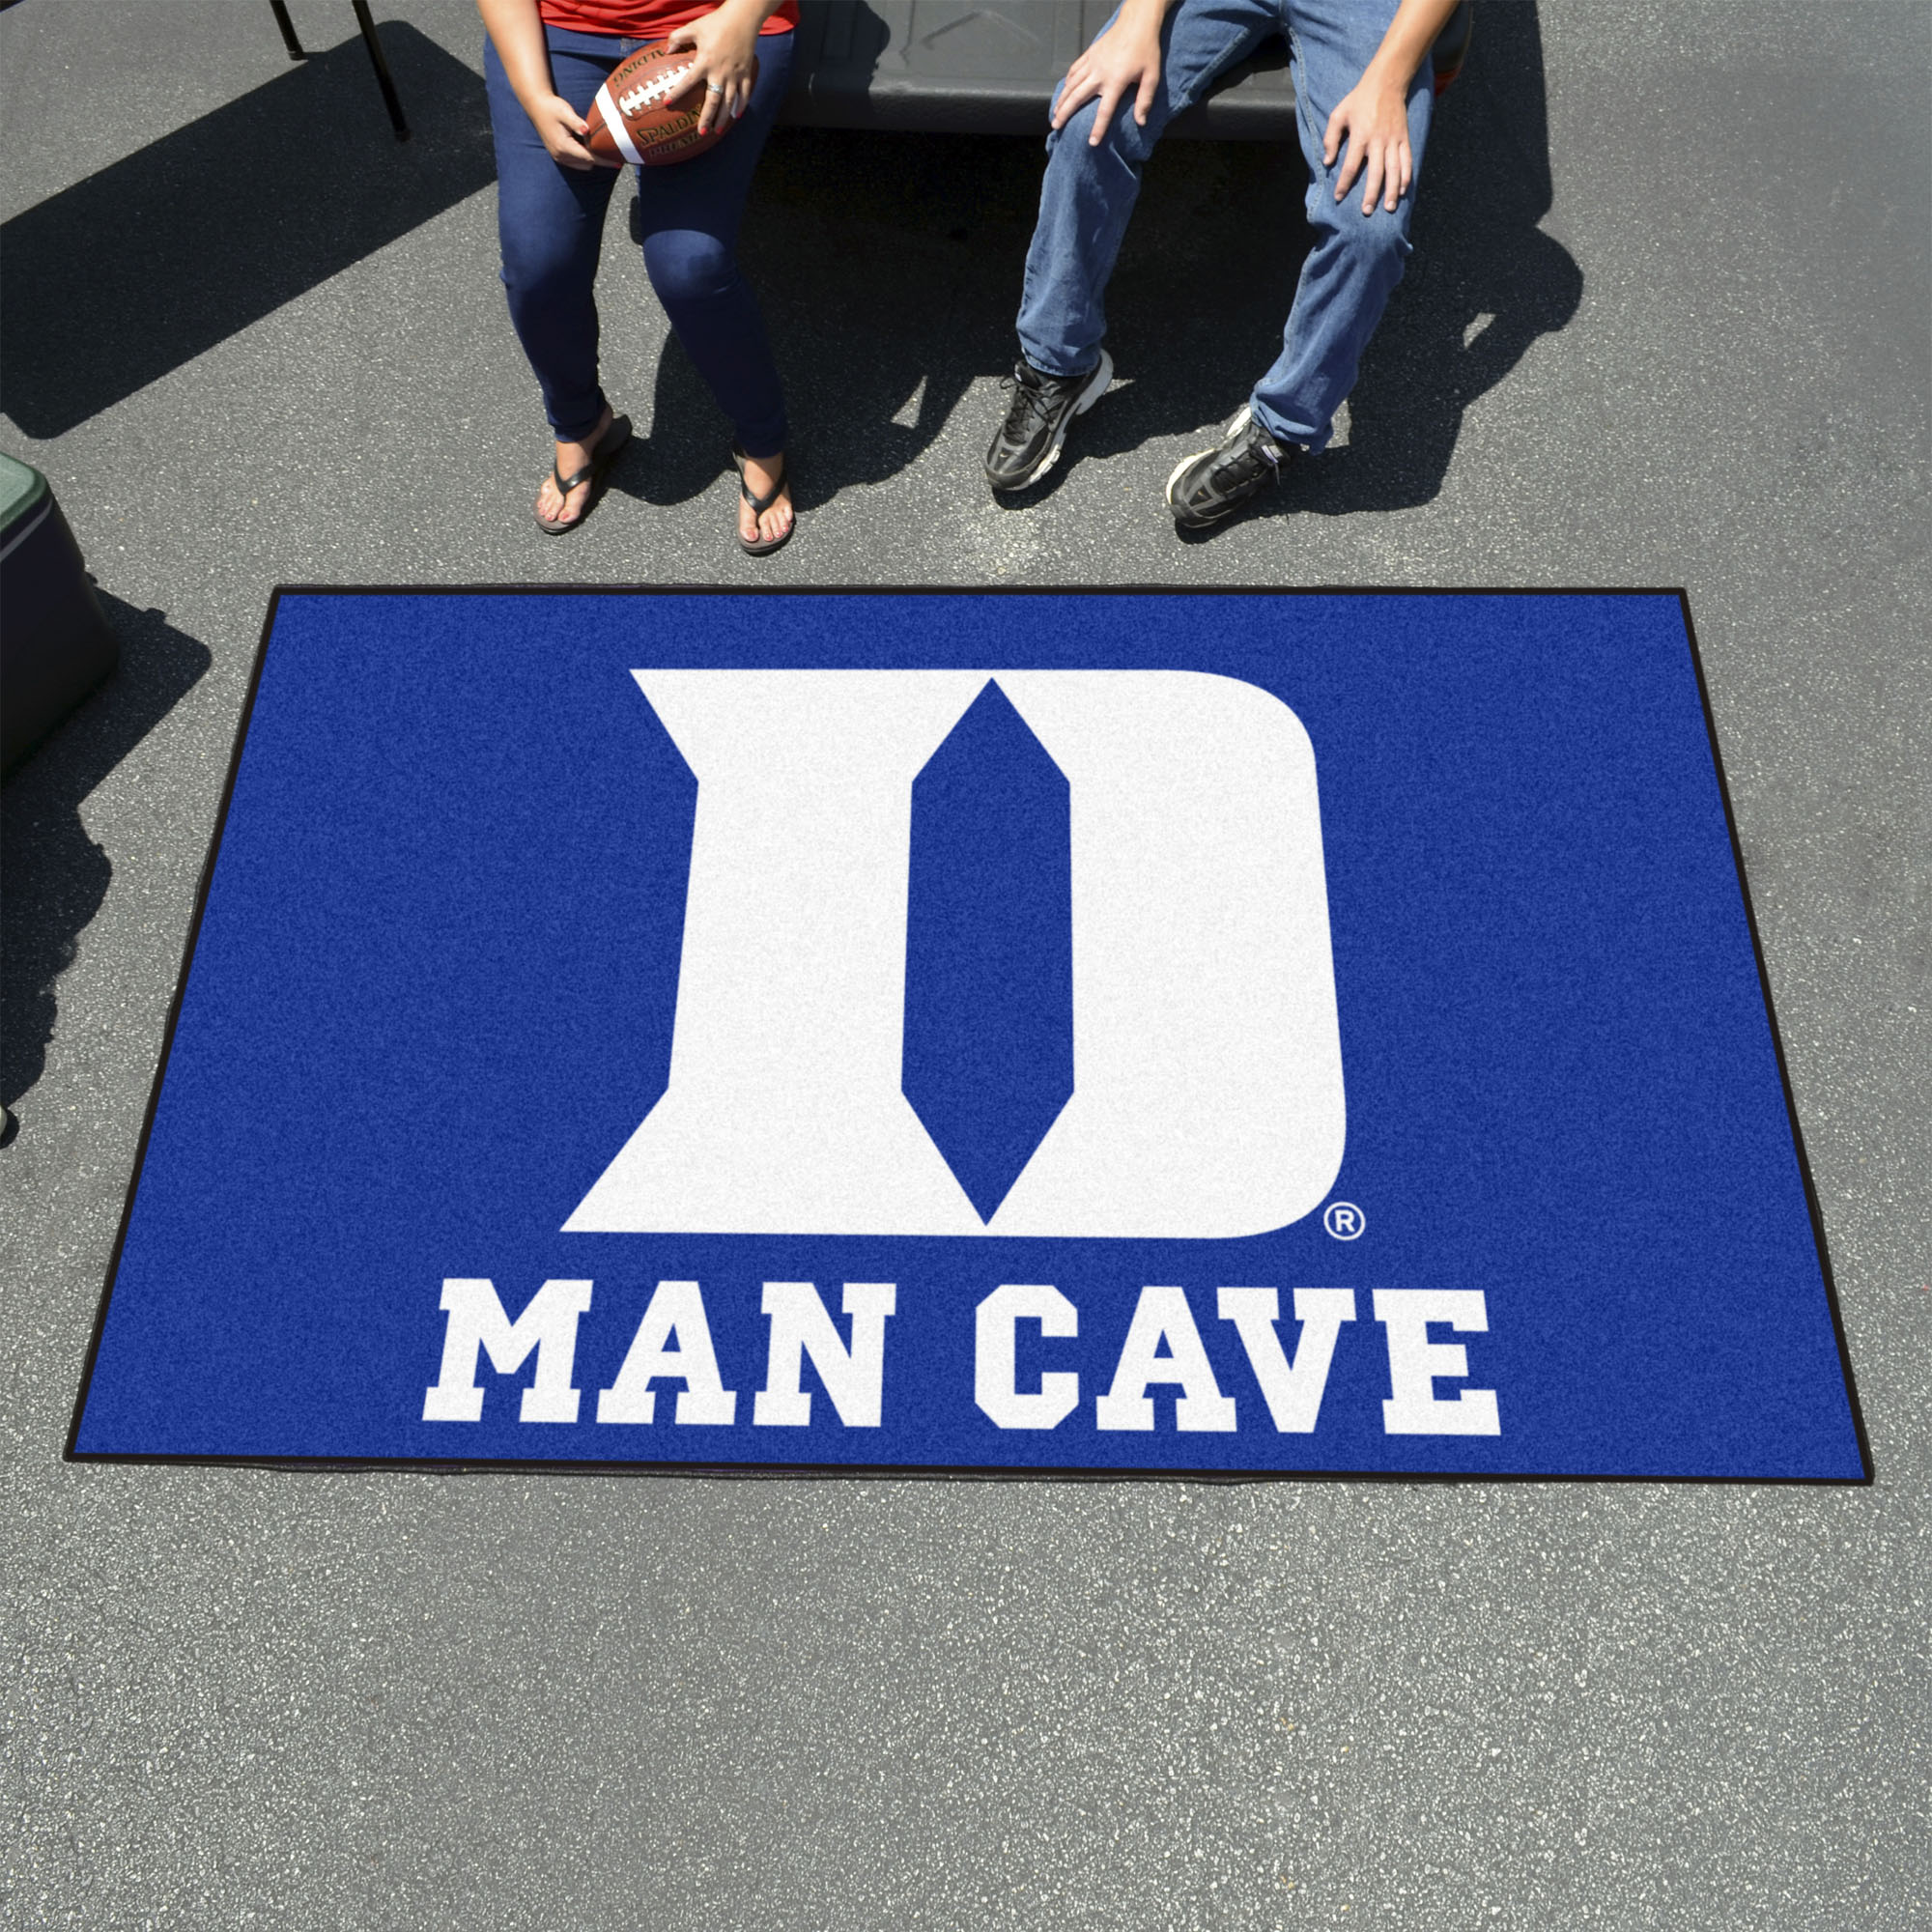 Duke Blue Devils "D" Logo Man Cave Ulti-Mat - 60 x 96